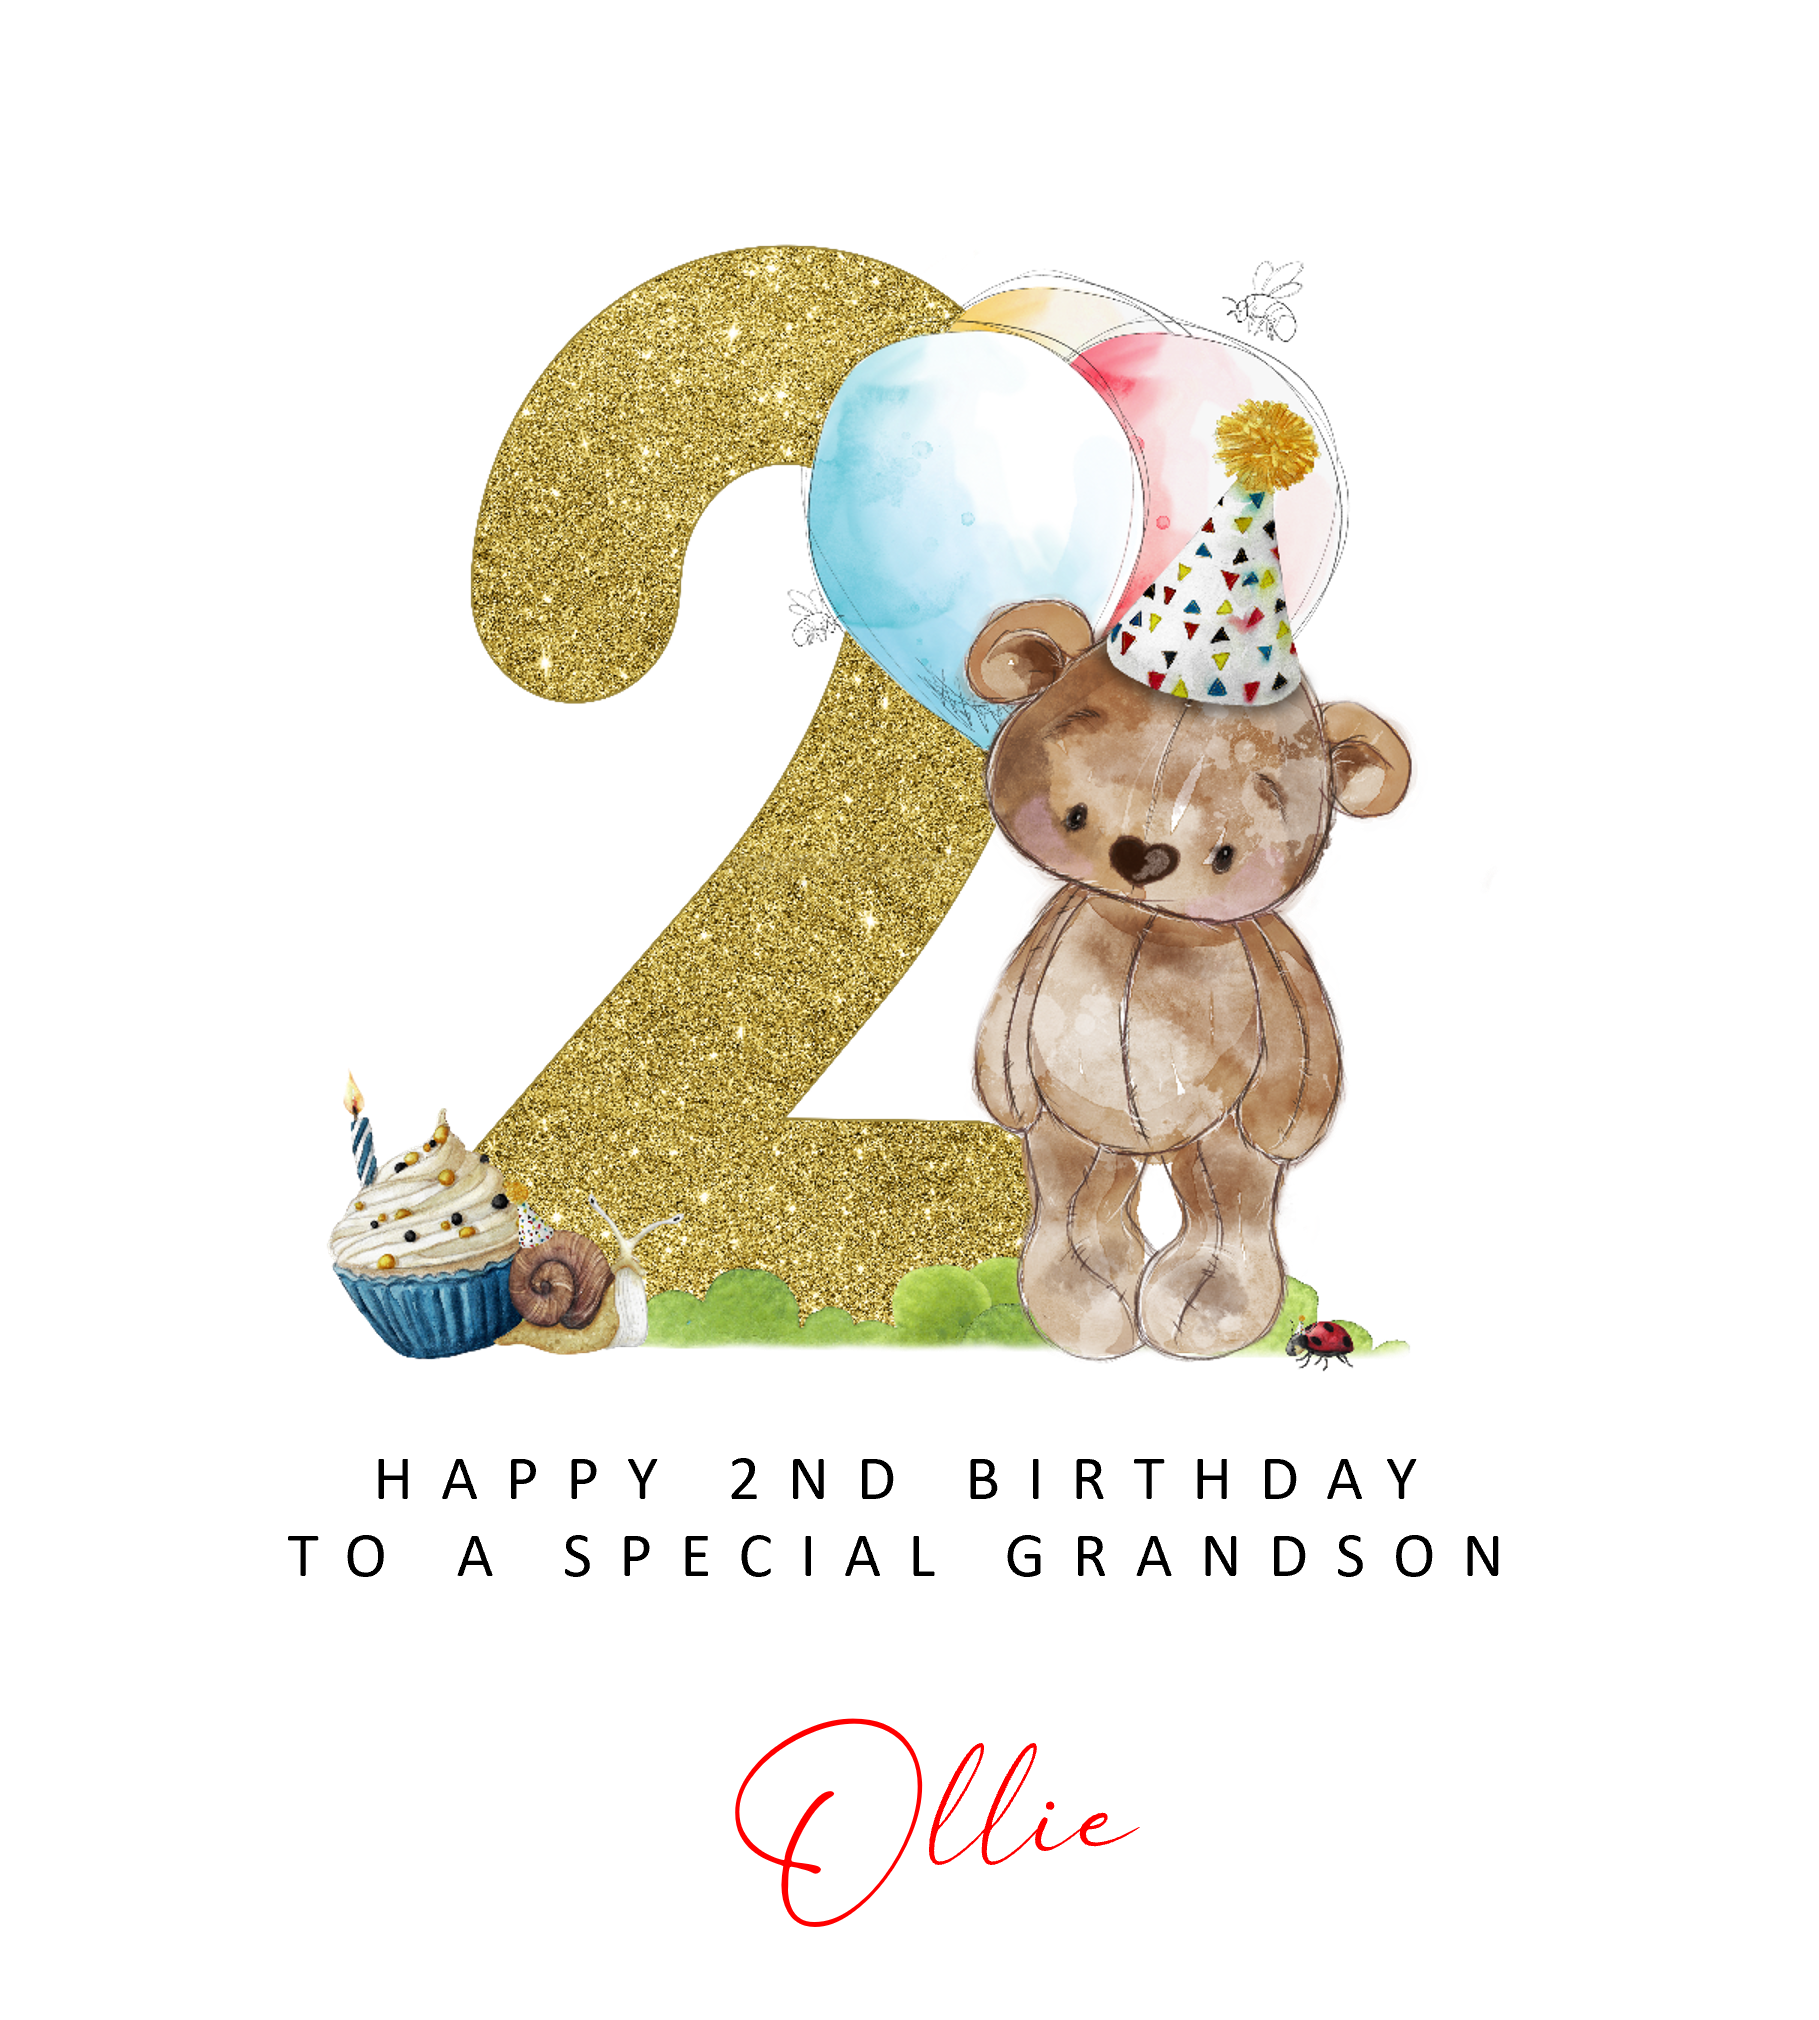 a birthday card with a teddy bear holding a cupcake